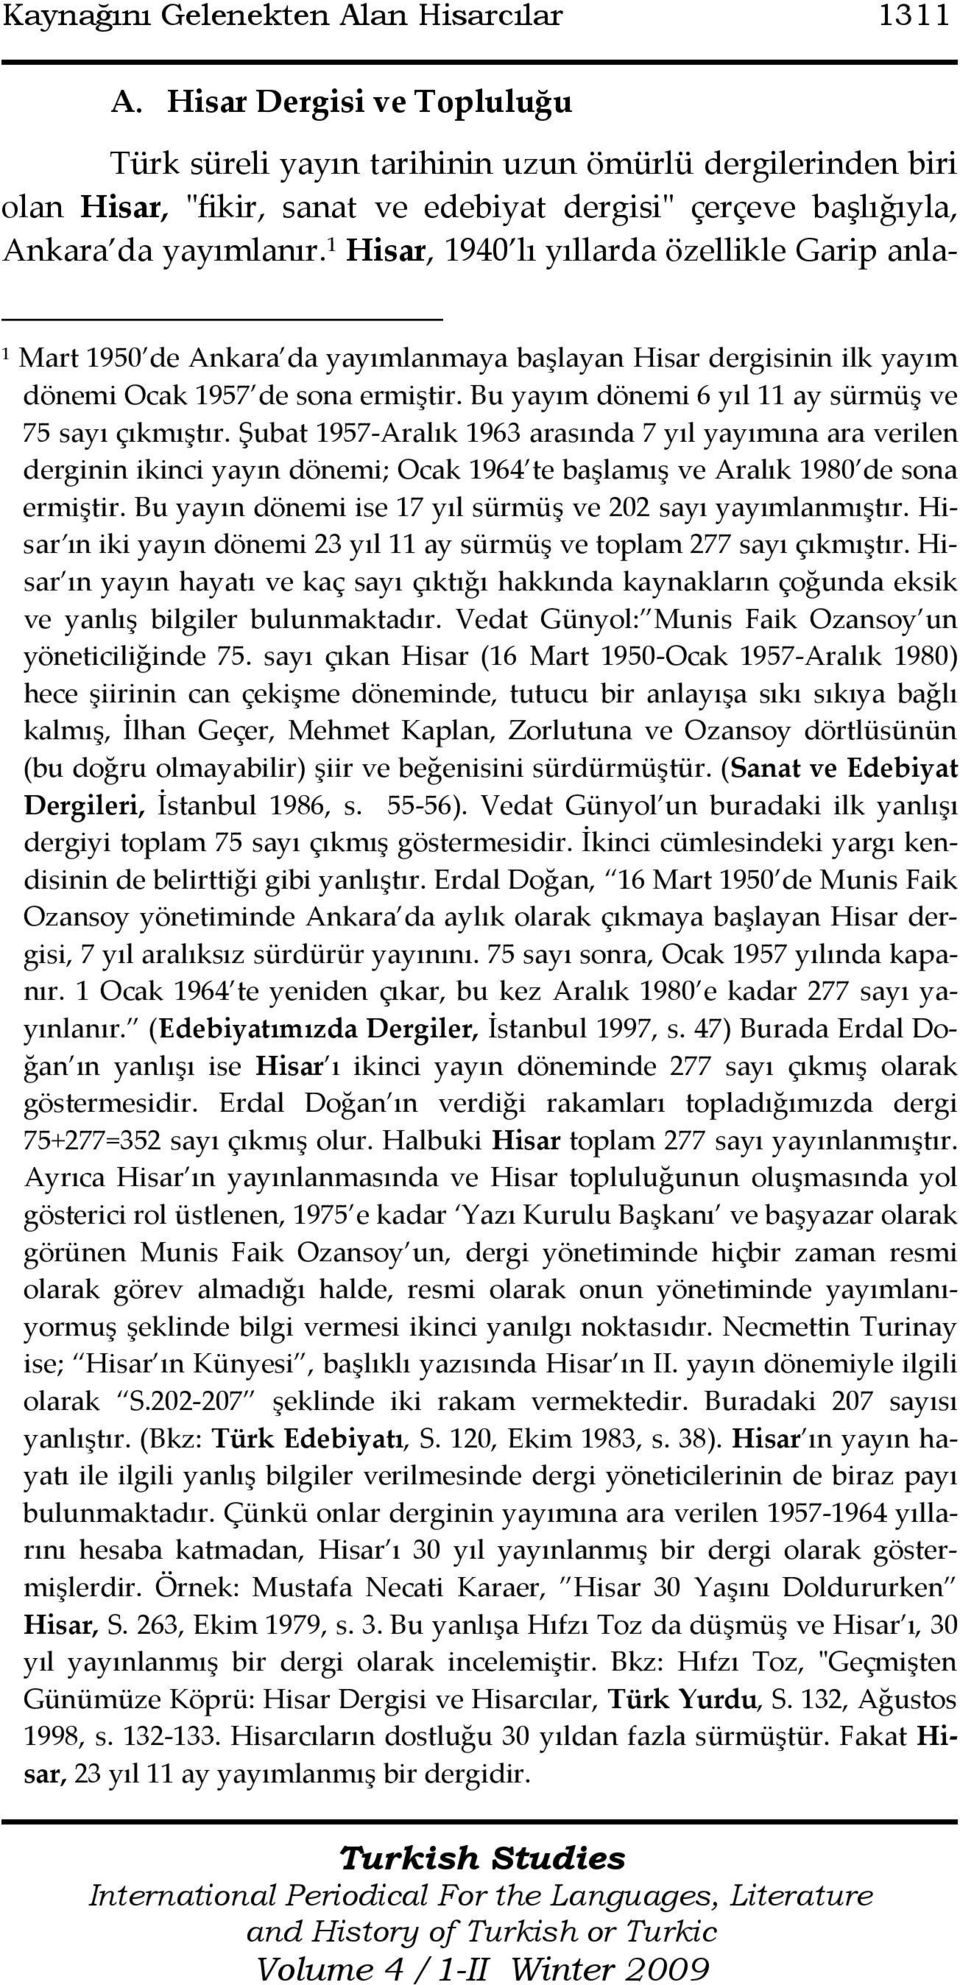 1 Hisar, 1940 lı yıllarda özellikle Garip anla- 1 Mart 1950 de Ankara da yayımlanmaya başlayan Hisar dergisinin ilk yayım dönemi Ocak 1957 de sona ermiştir.